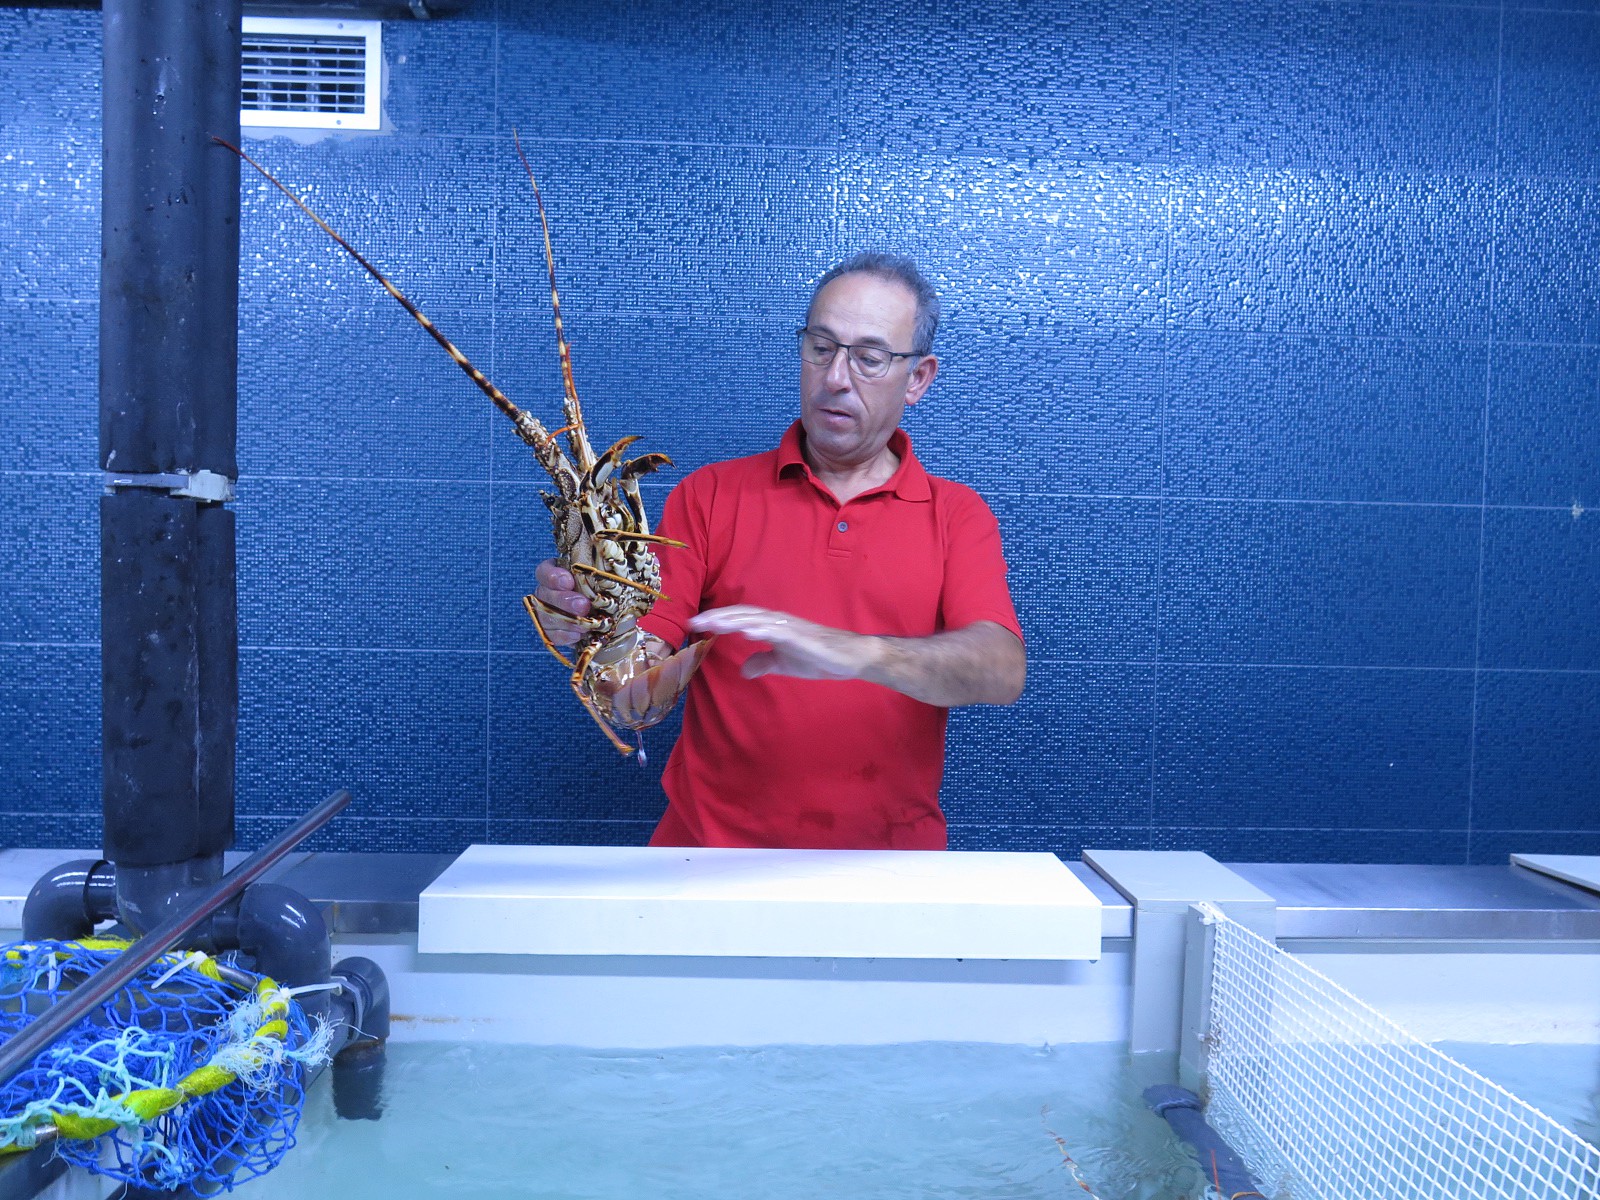 Chefe de sala Luís Martinho e uma lagosta viva, acabada de retirar do tanque